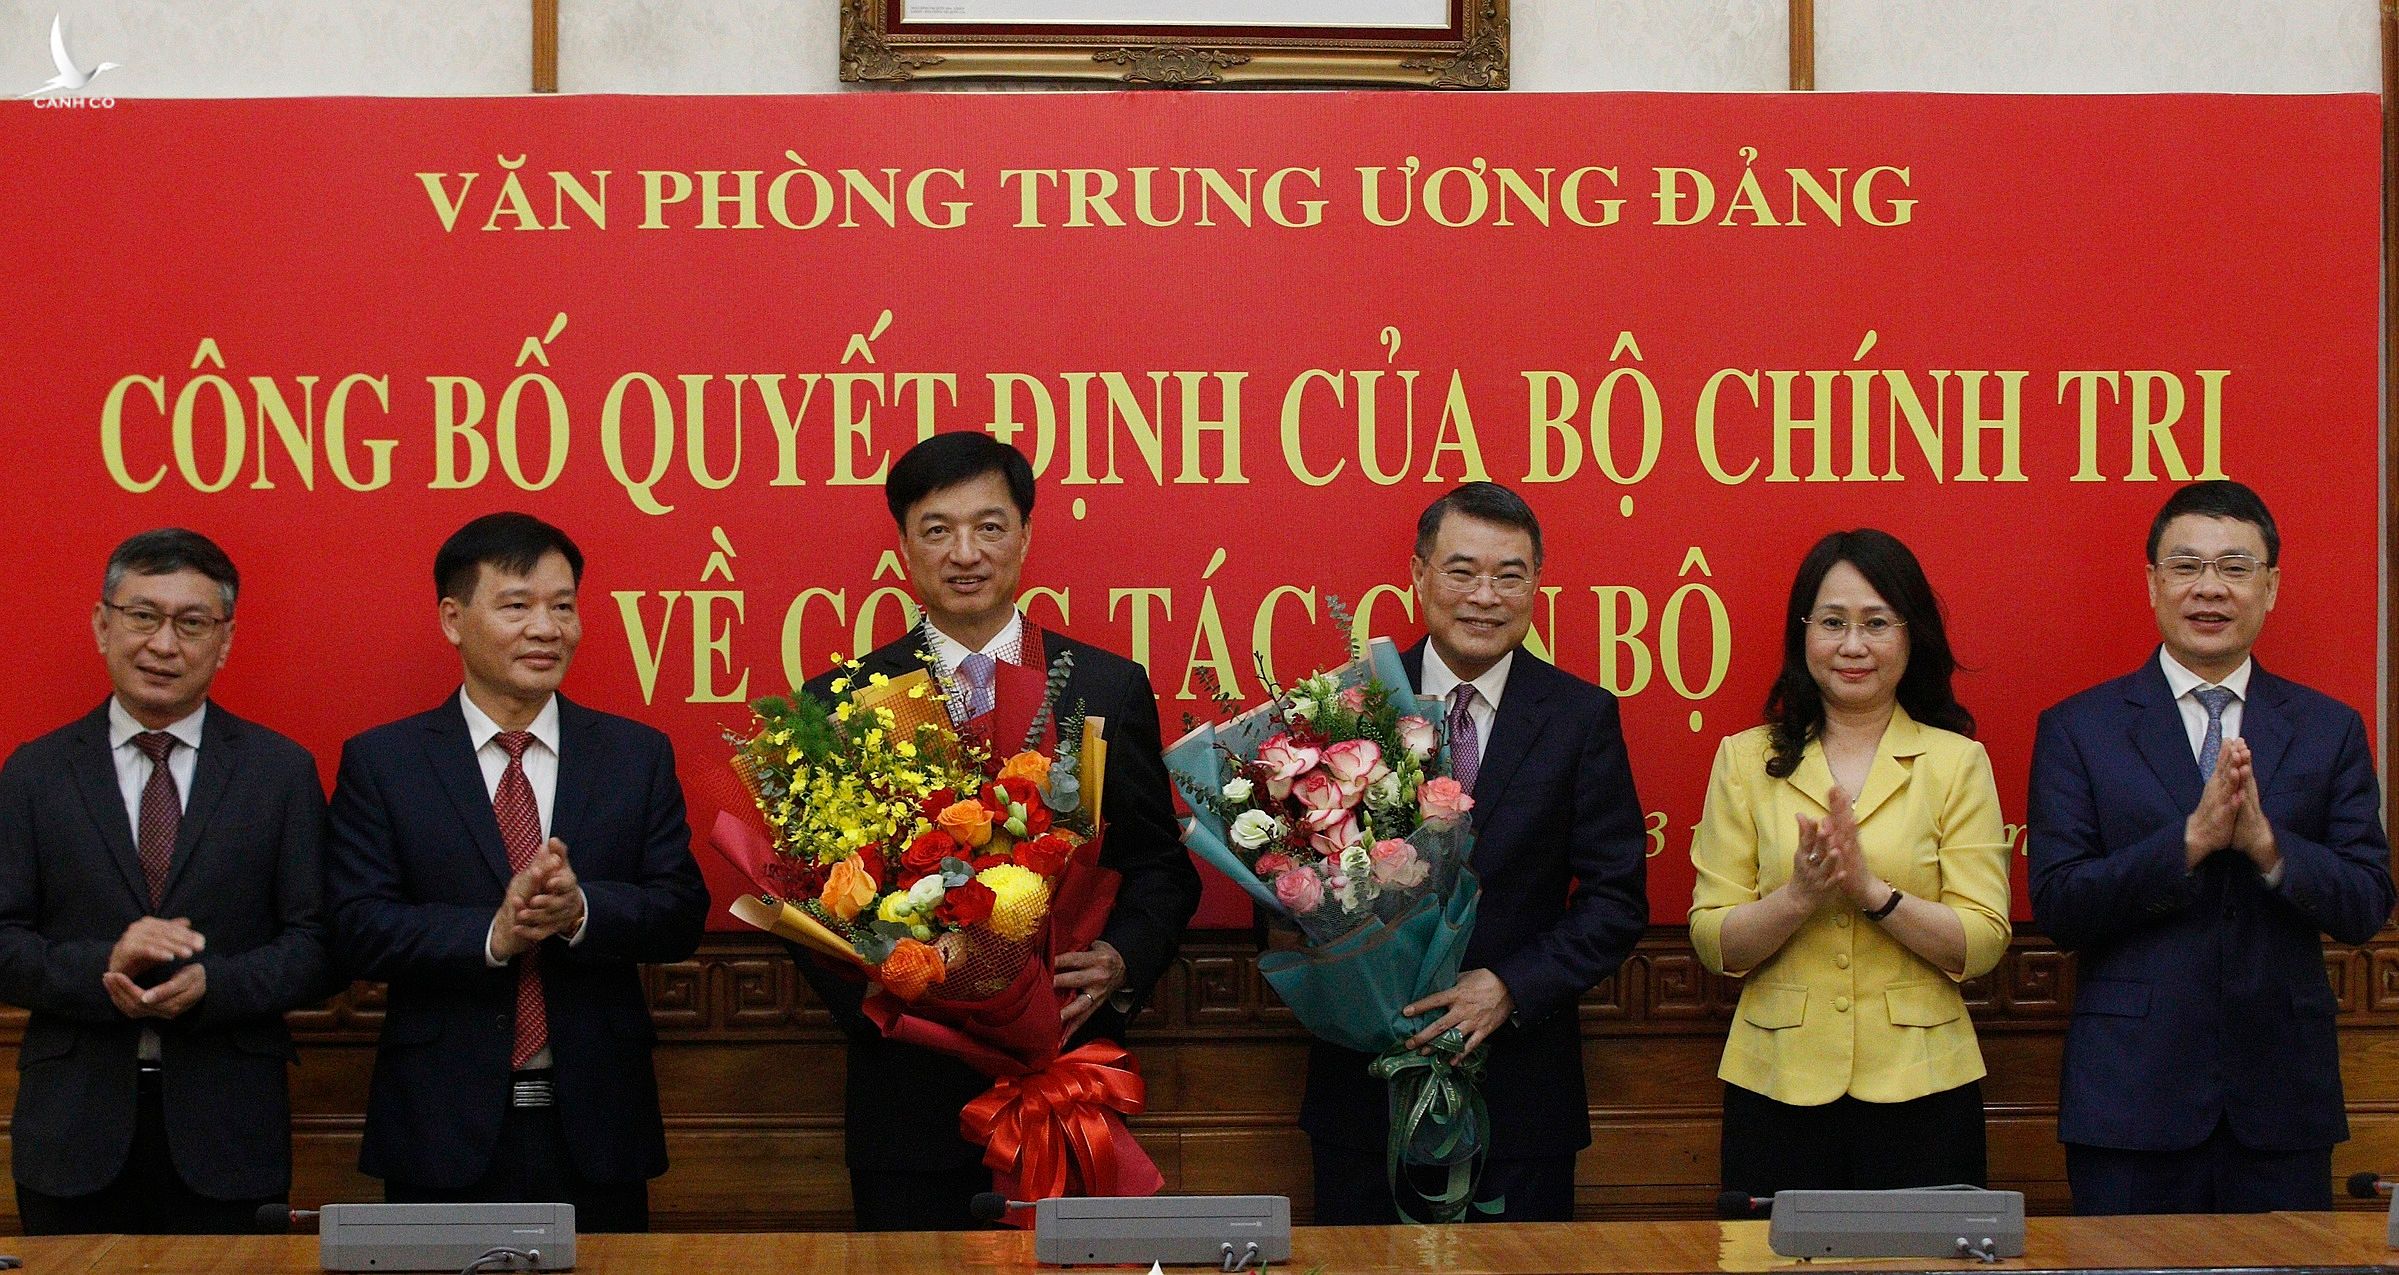 Các Phó chánh văn phòng Trung ương Đảng tặng hoa chúc mừng ông Lê Minh Hưng (thứ 3 từ phải qua - Trưởng ban Tổ chức Trung ương, nguyên Chánh văn phòng Trung ương Đảng) và ông Nguyễn Duy Ngọc (tân Chánh văn phòng Trung ương Đảng).